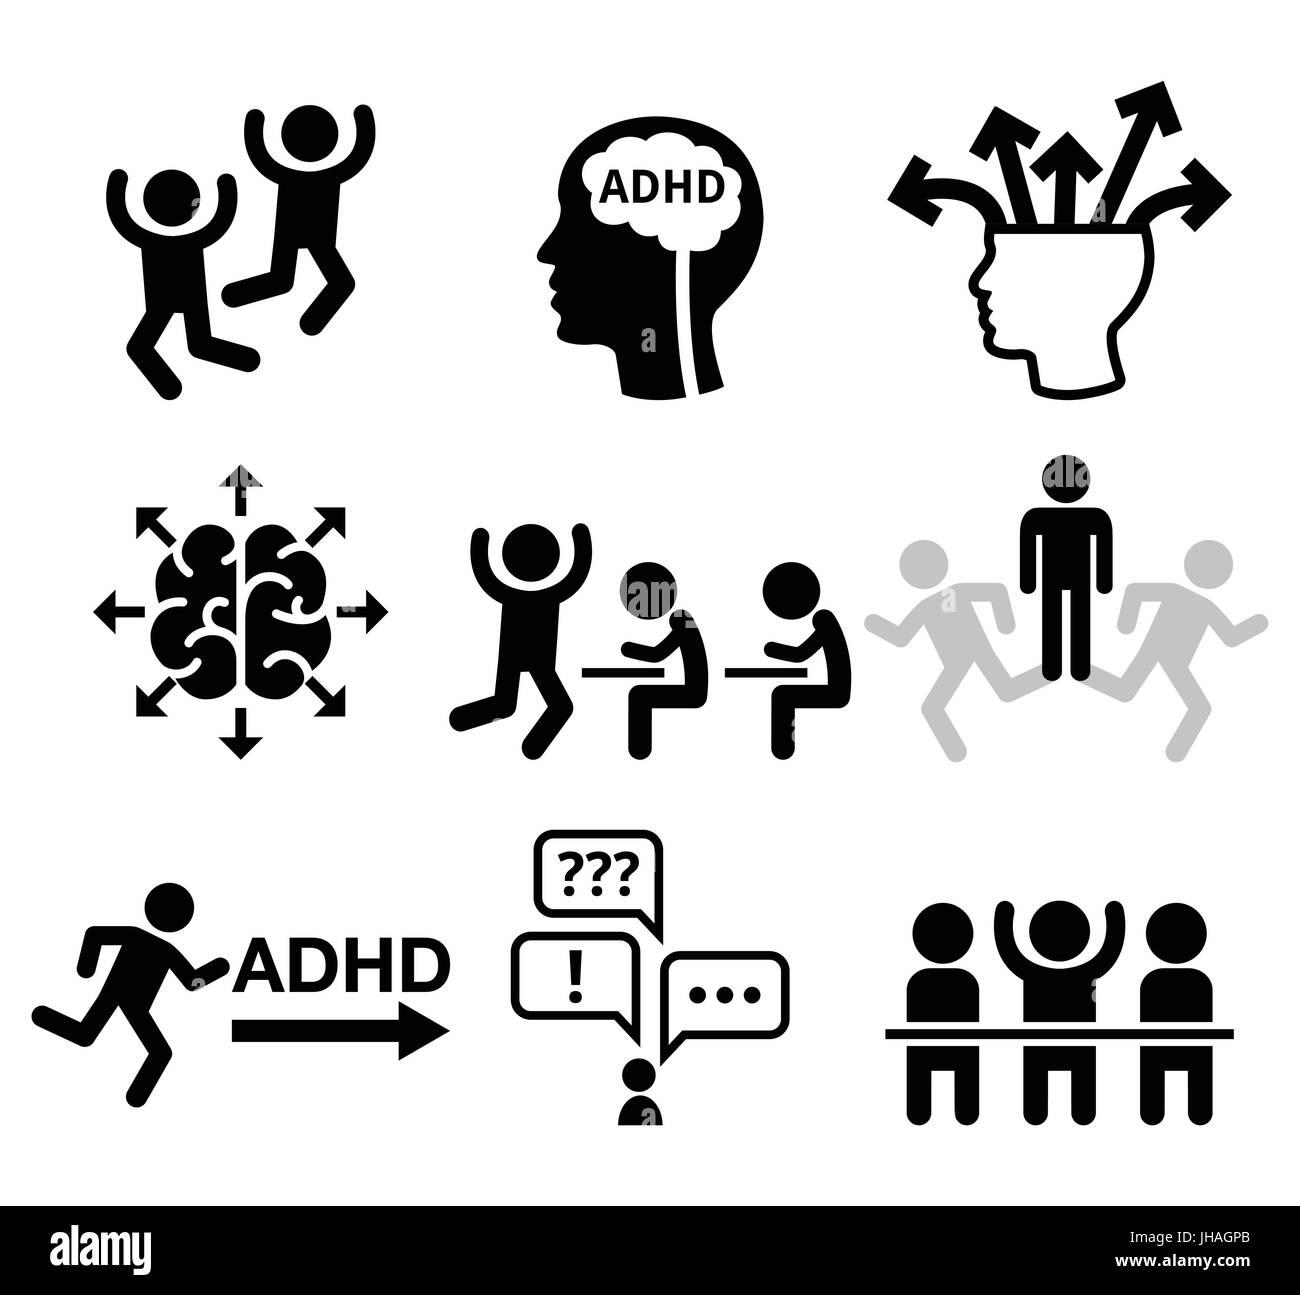 Adhs - Aufmerksamkeitsdefizit-hyperaktivitätsstörung Vector Icons Set Gesundheit Symbole gesetzt - die Leute wollen ADD oder ADHD Symbole isoliert auf weißem Stock Vektor